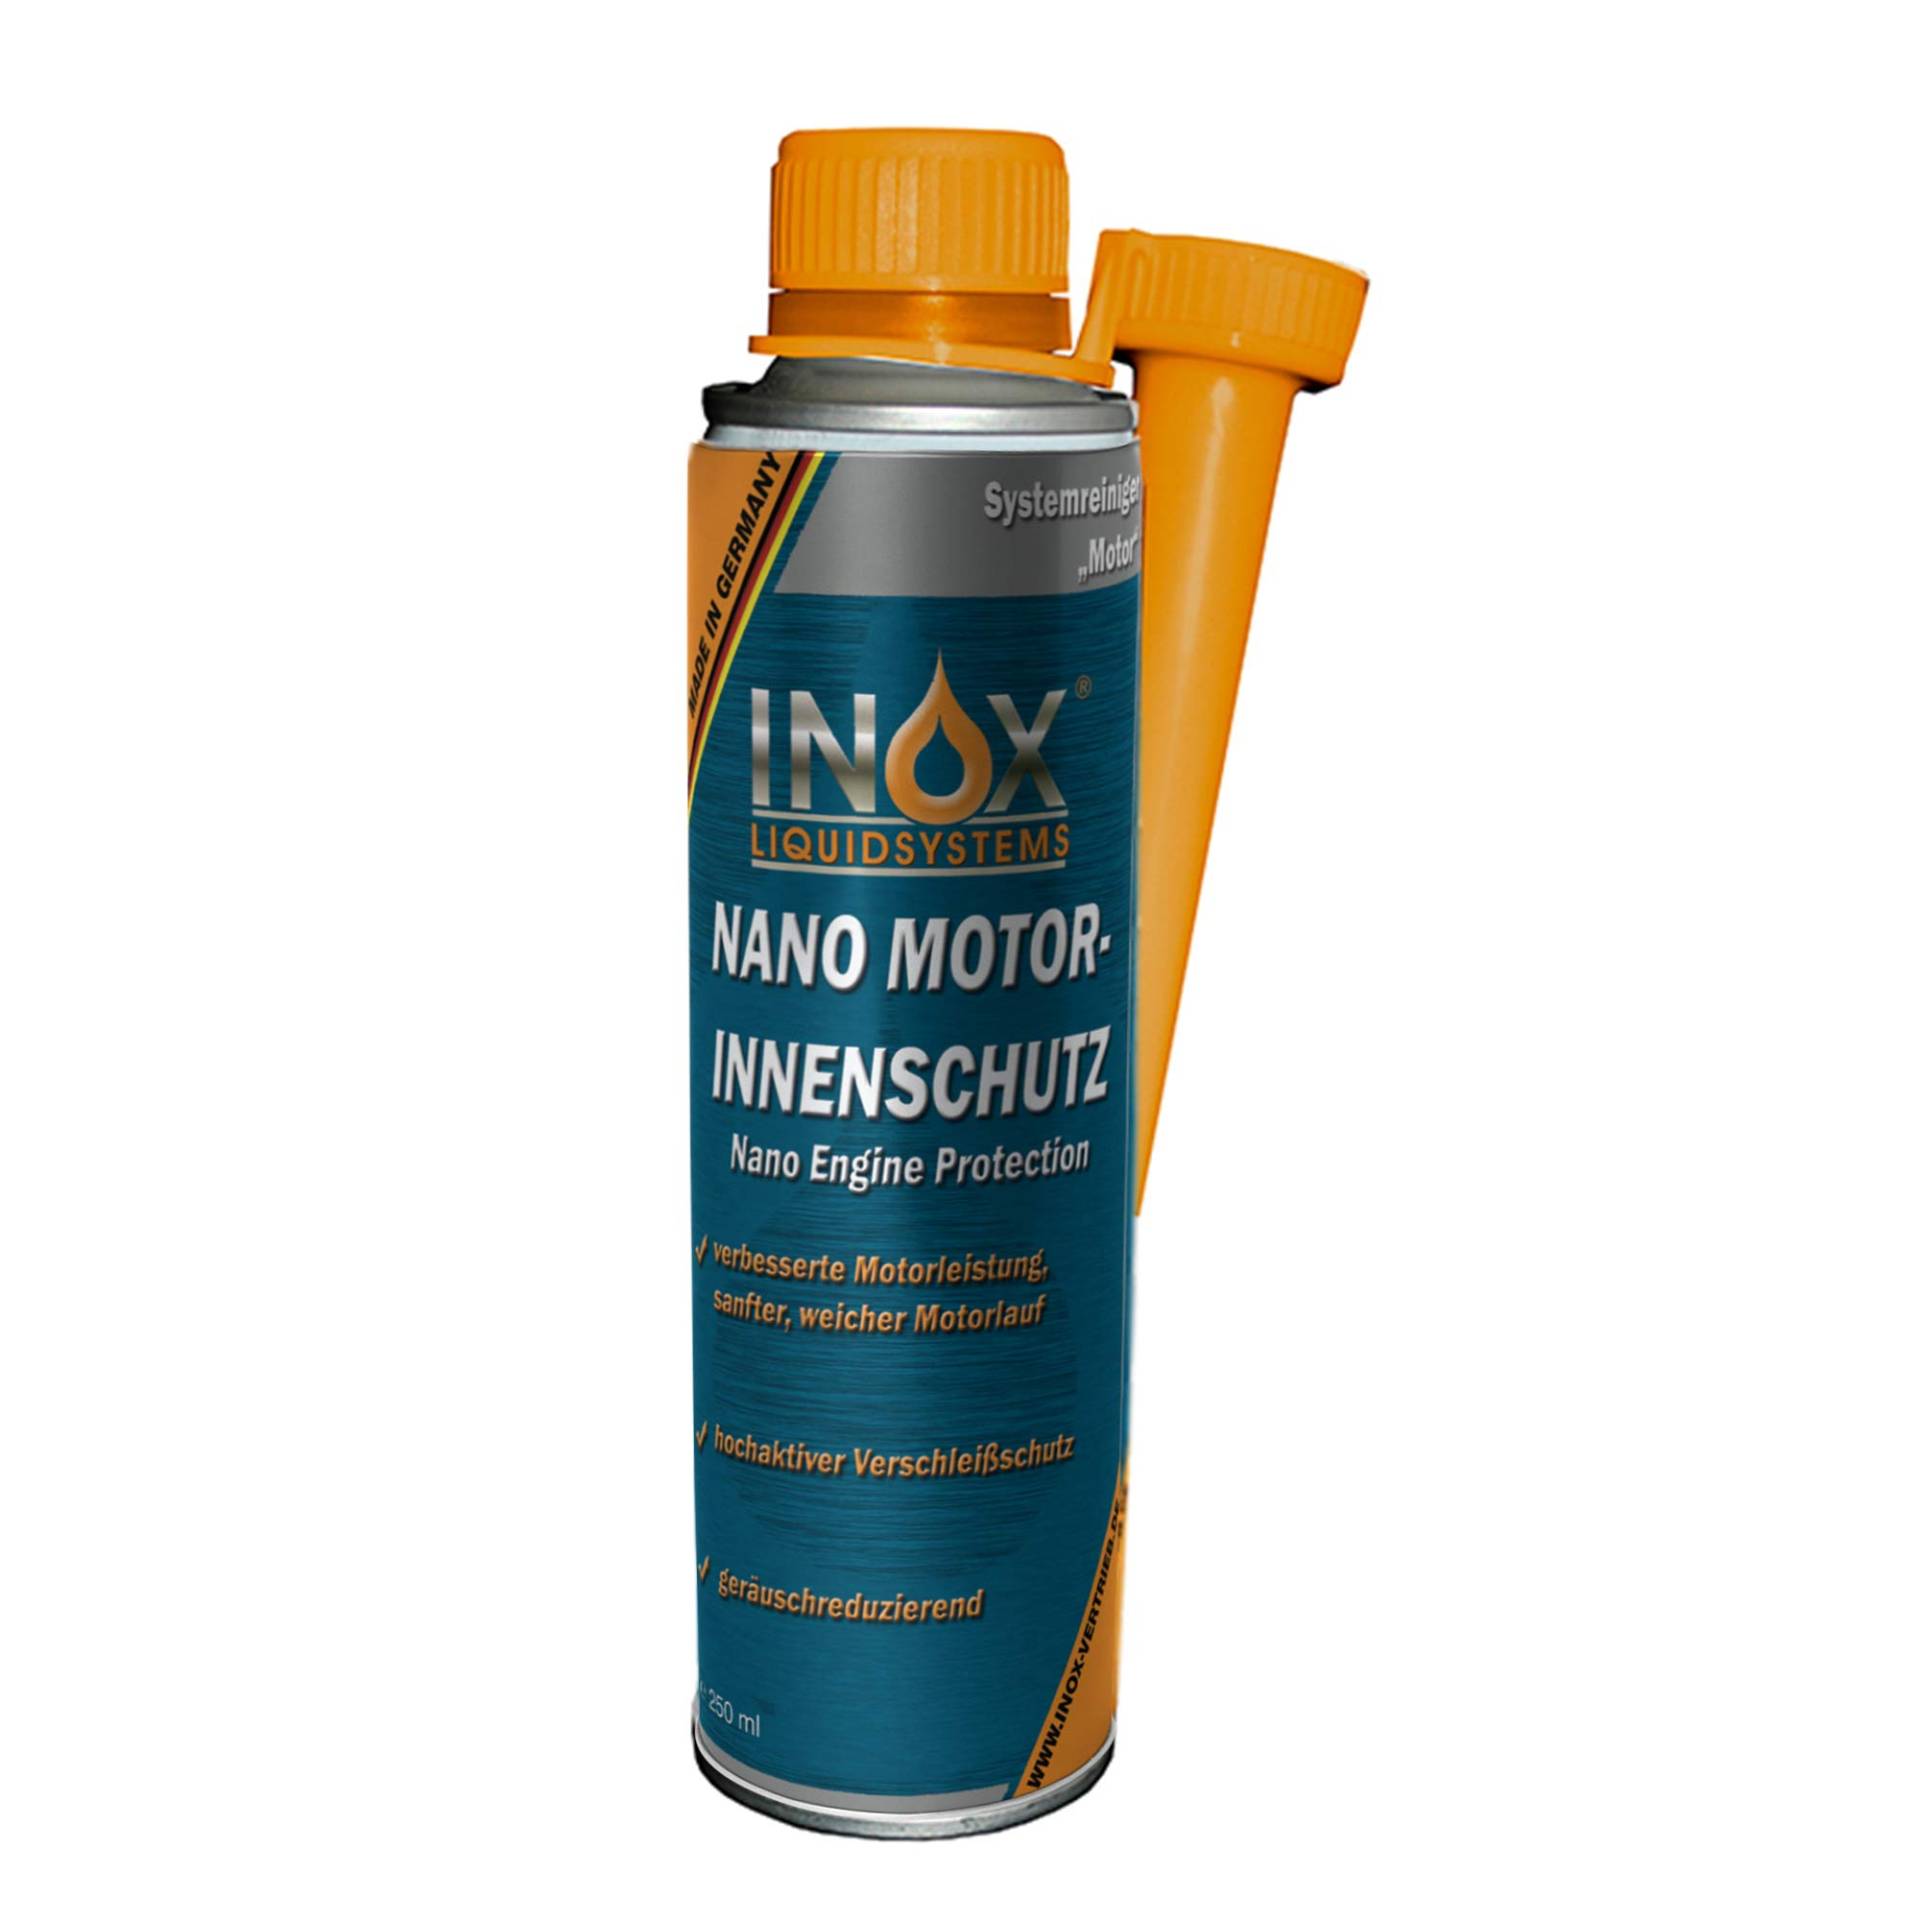 INOX® Nano Motorinnenschutz Additiv, 250ml - Motorinnenversiegelung verhindert Verschleiß für alle Benzin- und Dieselmotoren von INOX-LIQUIDSYSTEMS